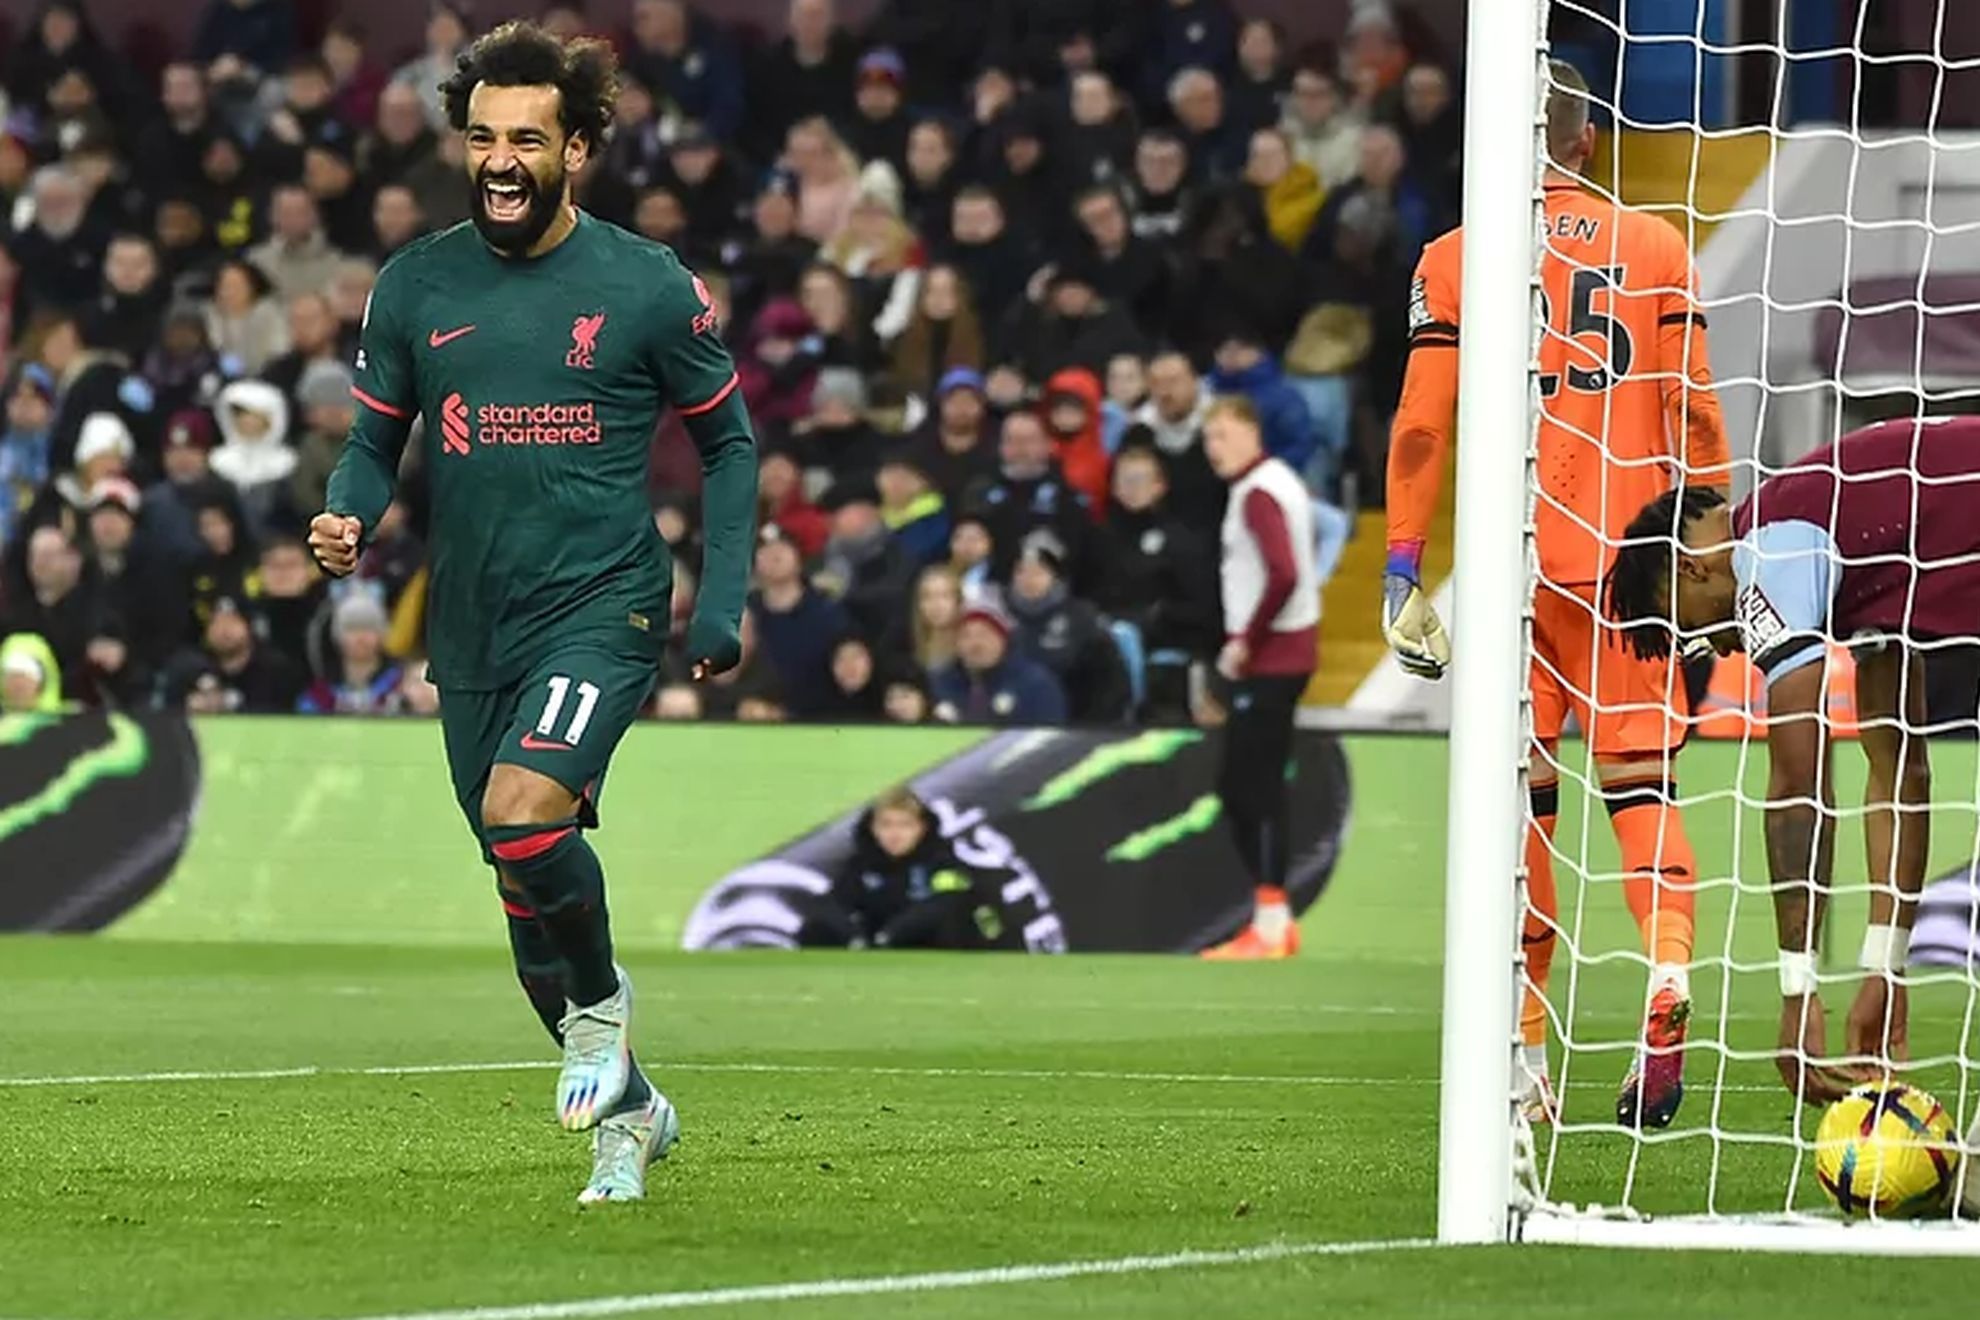 Mohamed Salah celebrates a goal against Aston Villa